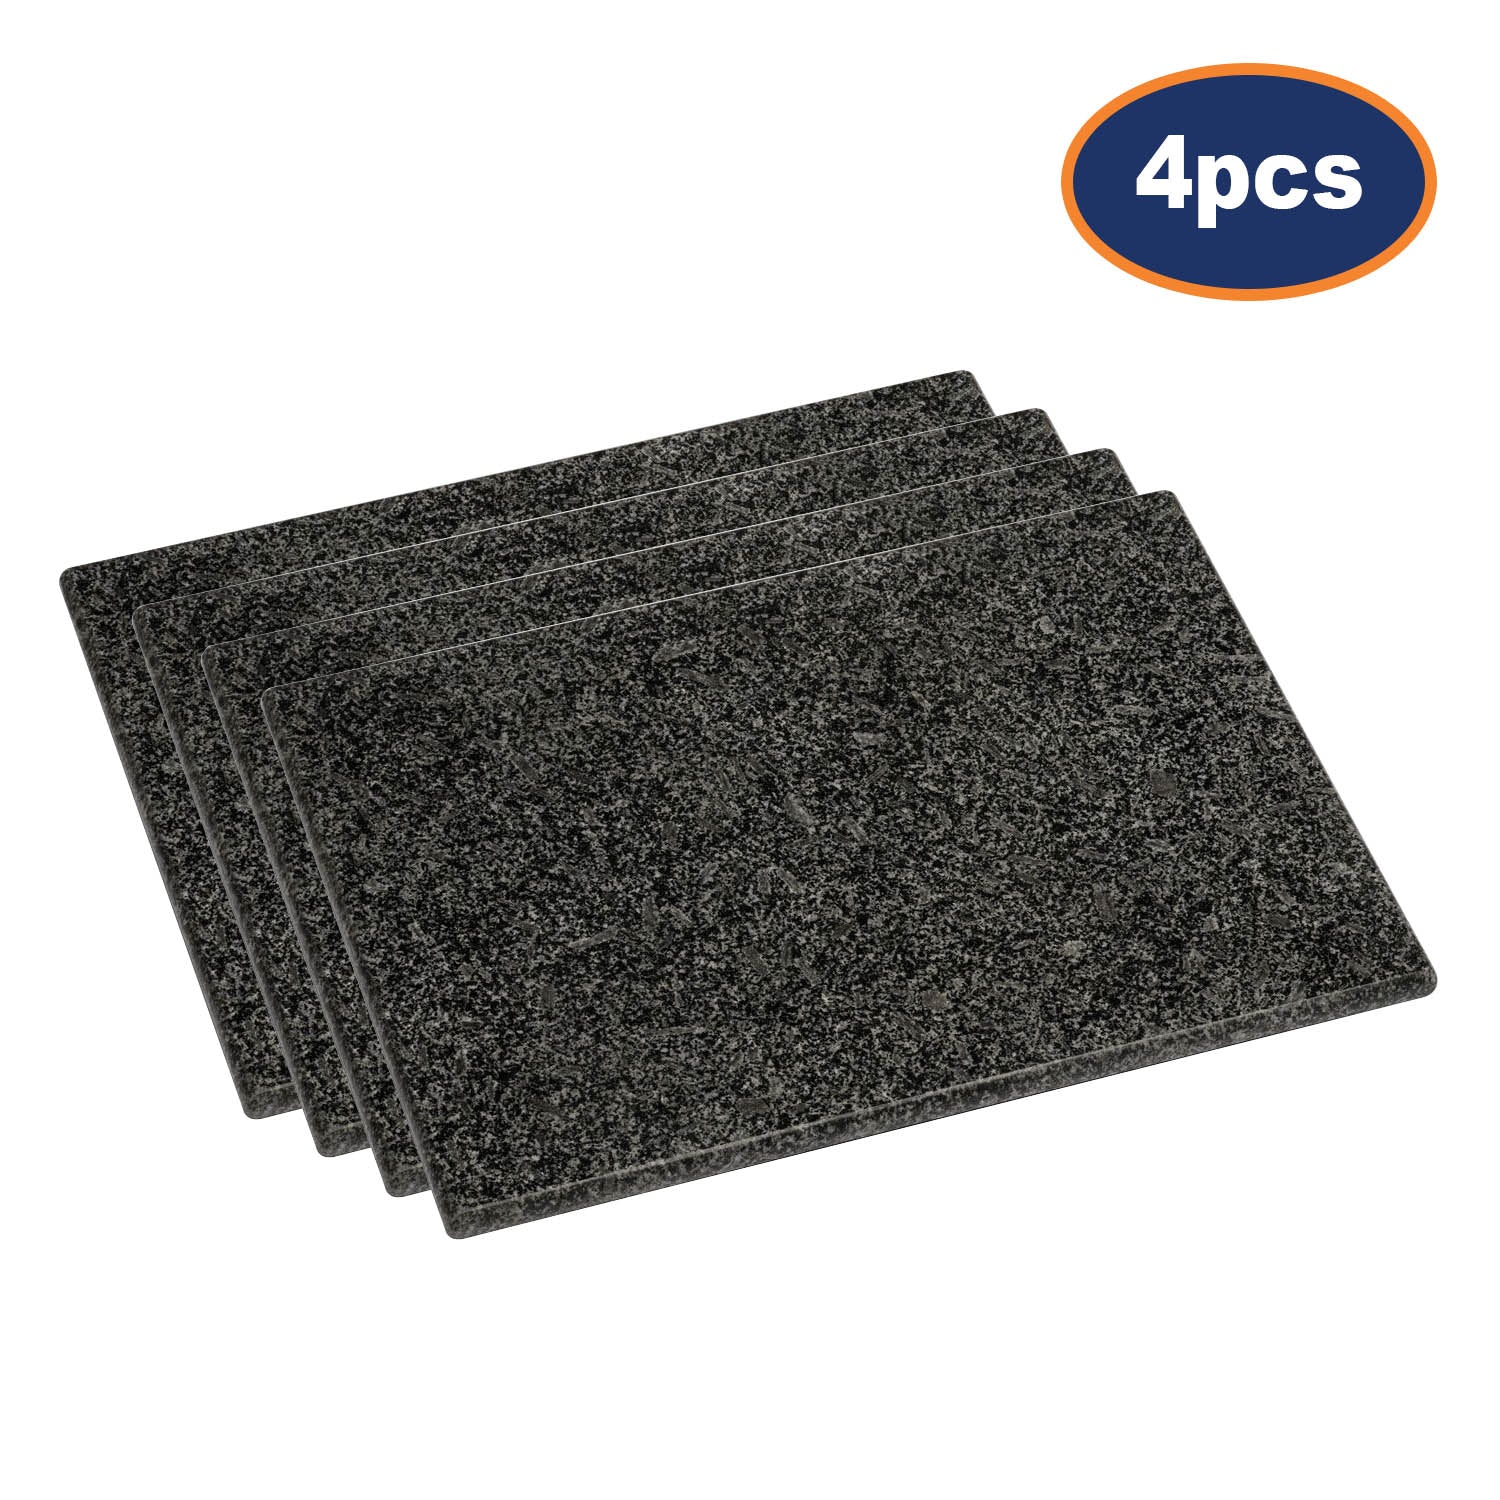 4pcs Black Speckled Granite Cutting  Board